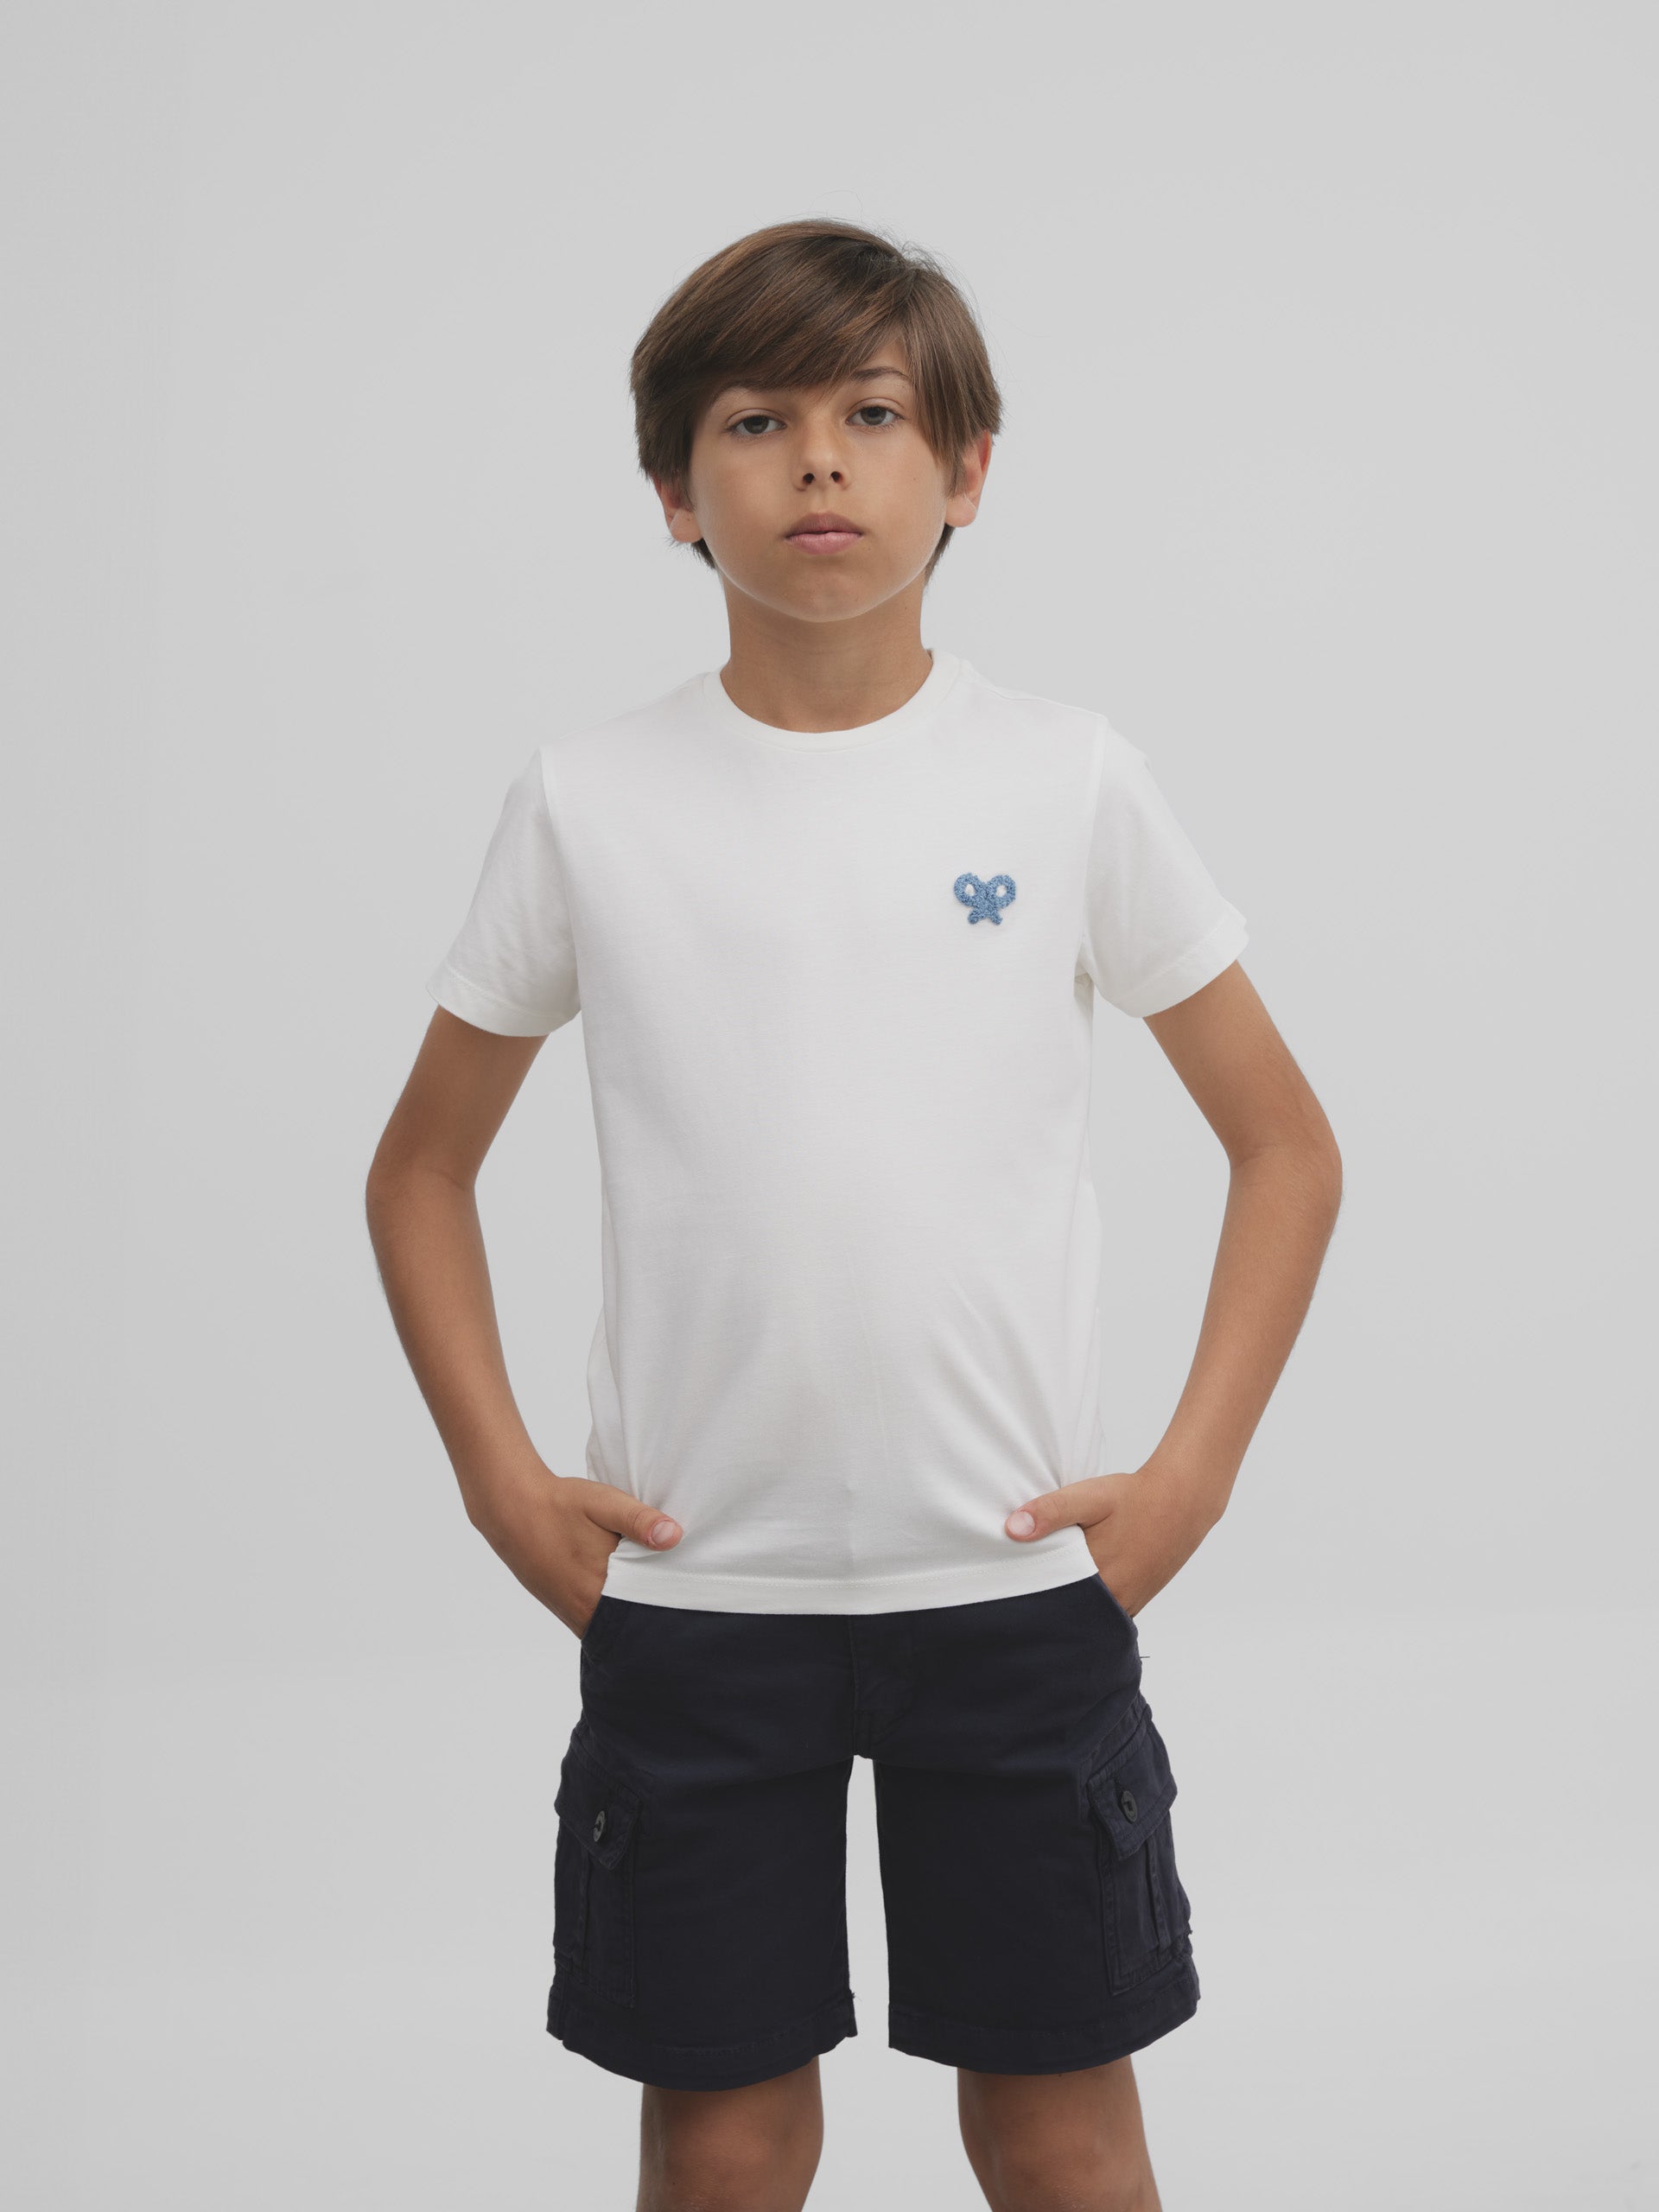 Camiseta kids pool vibes blanca